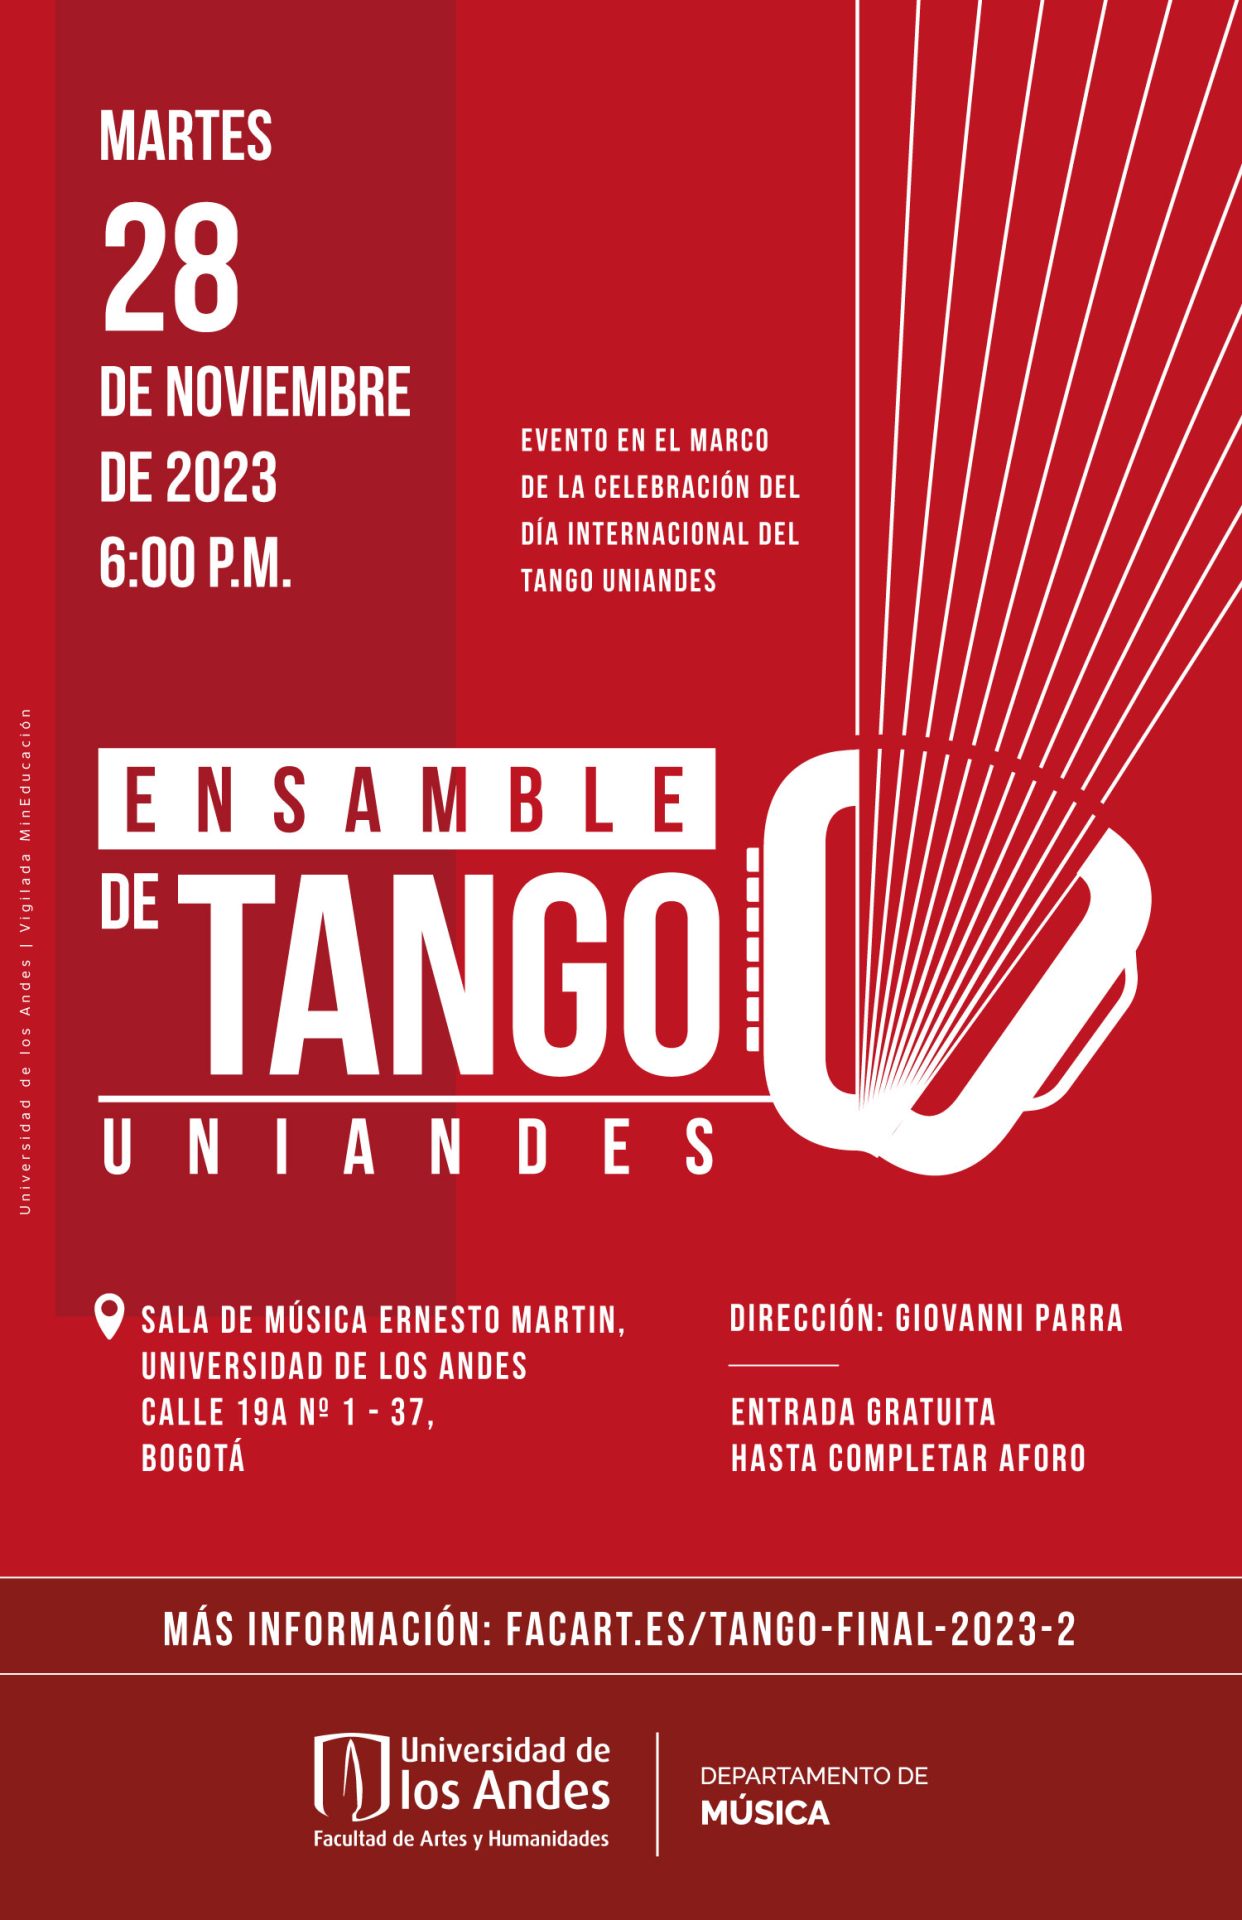 Martes 28 de noviembre de 2023 a las 6:00 p.m. en la sala de música Ernesto Martin, Universidad de los Andes